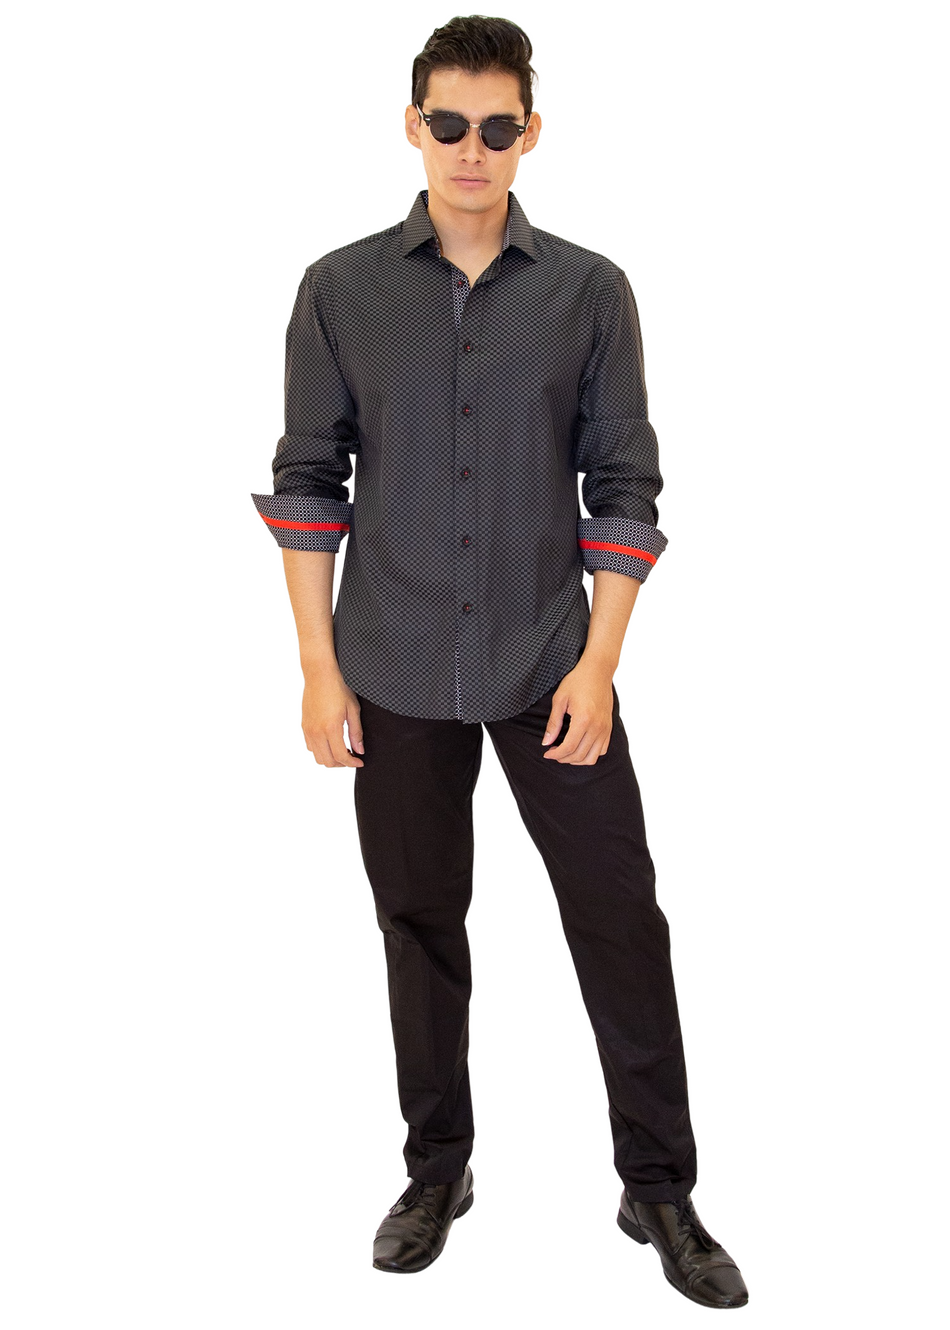 Checkered Texture Long Sleeve Dress Shirt Black